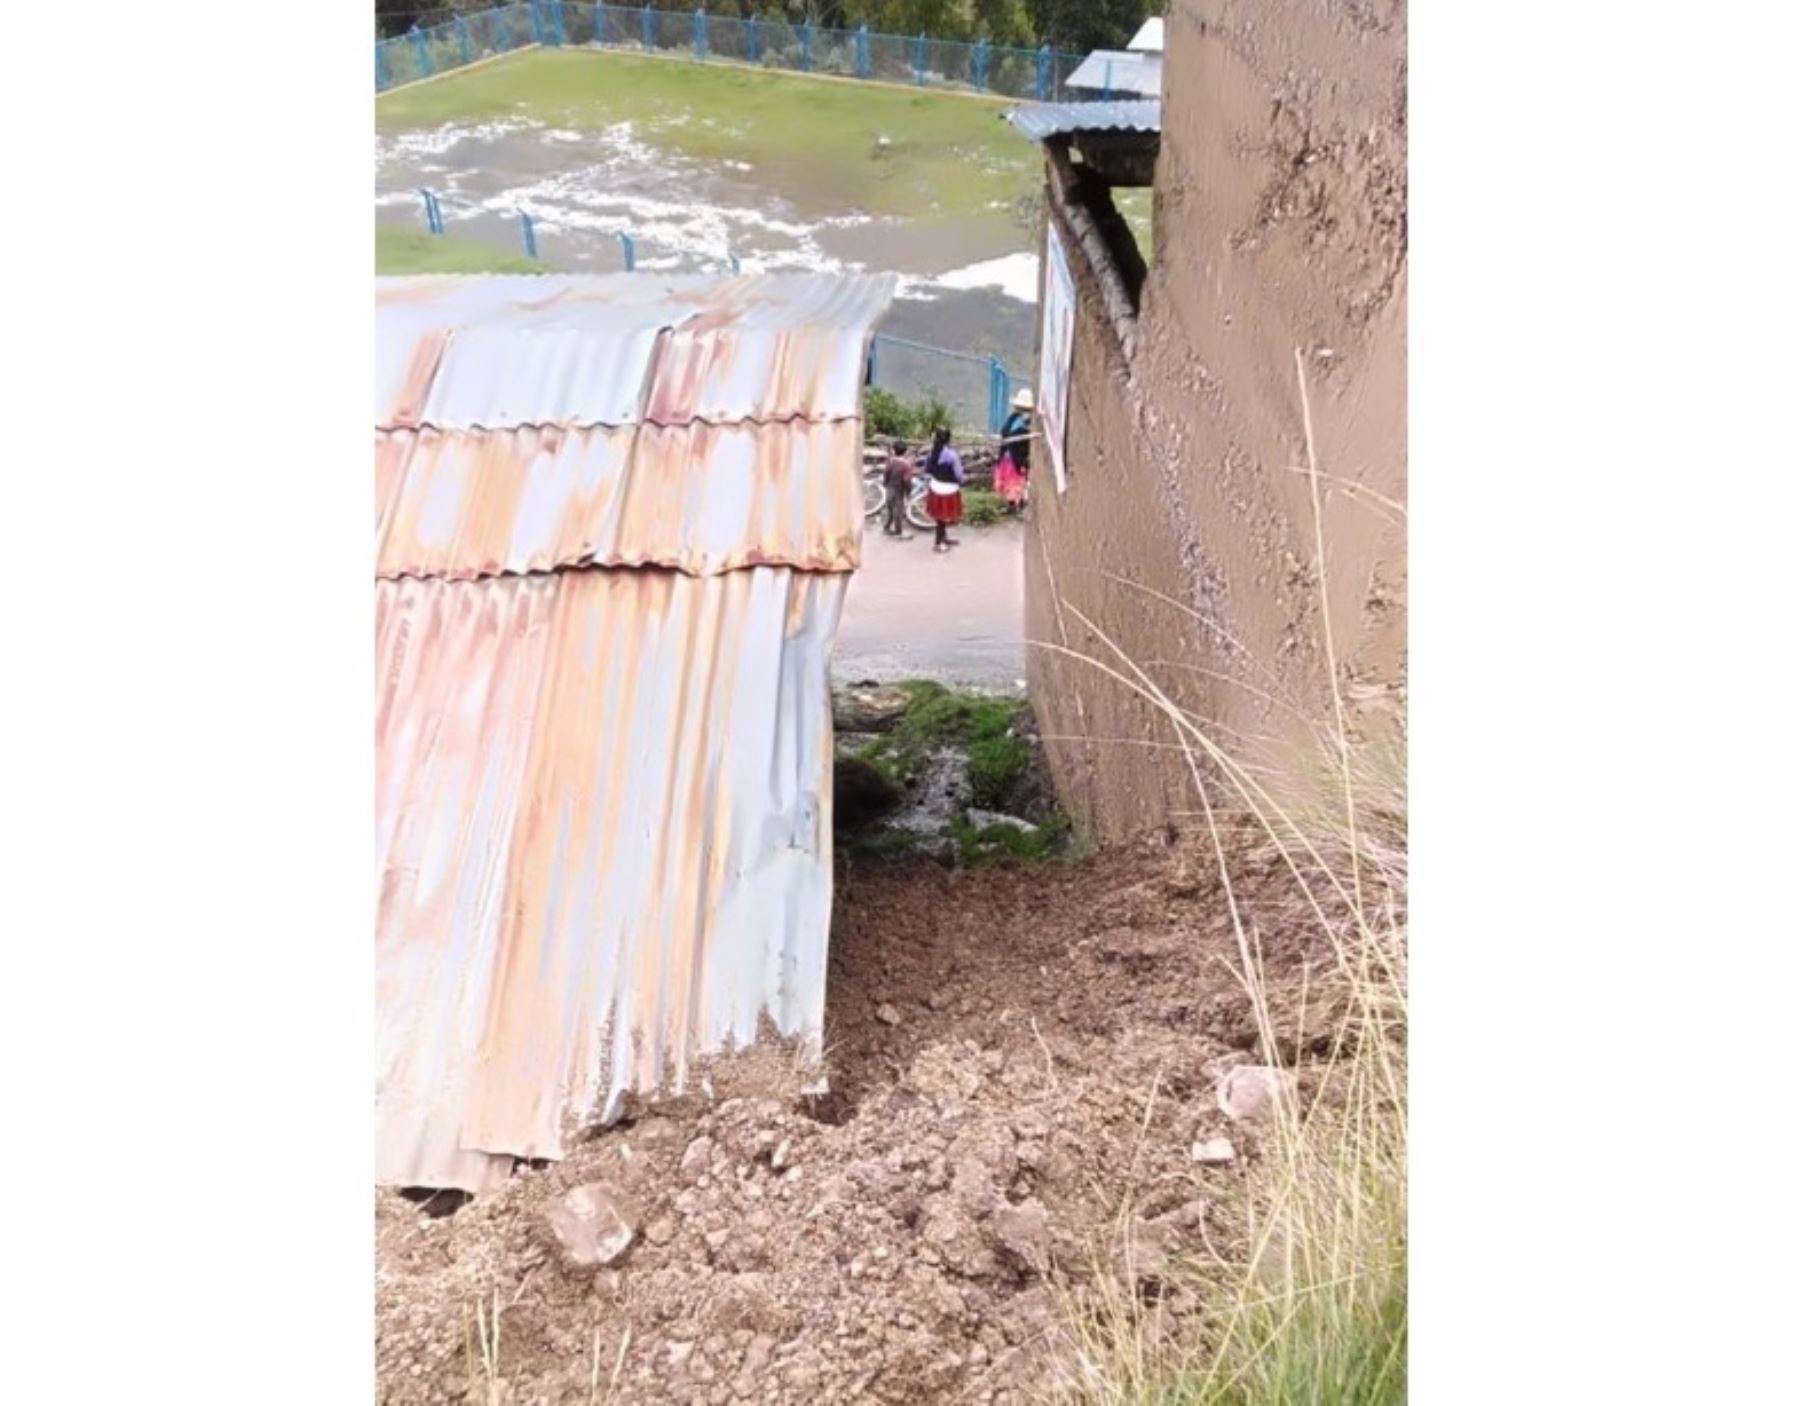 El COER Áncash reportó dos viviendas afectadas por deslizamiento a consecuencia de las lluvias intensas que afecta al distrito de Huayllán, provincia de Pomabamba. ANDINA/Difusión